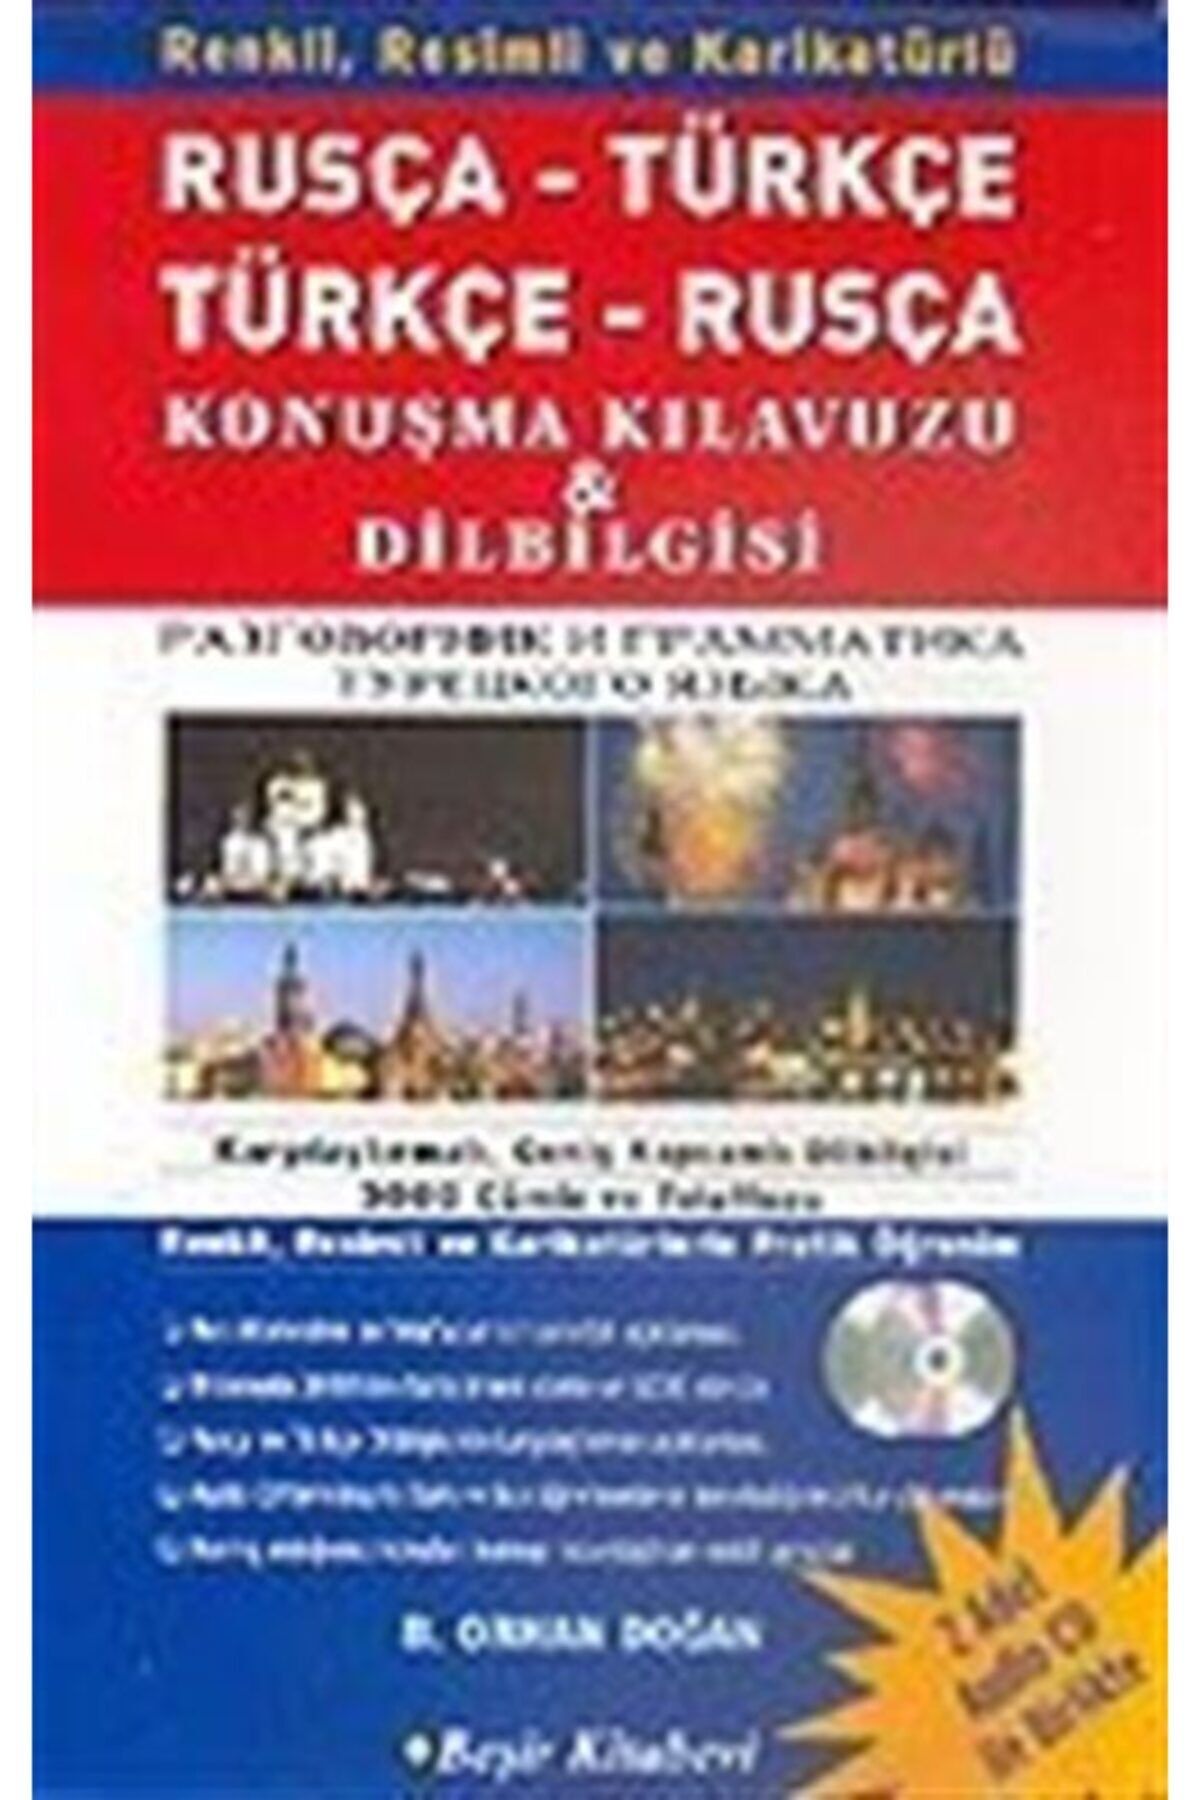 Beşir Kitabevi Kutulu Rusça-Türkçe/Türkçe Rusça Konuşma Kılavuzu Ve Dilbilgisi